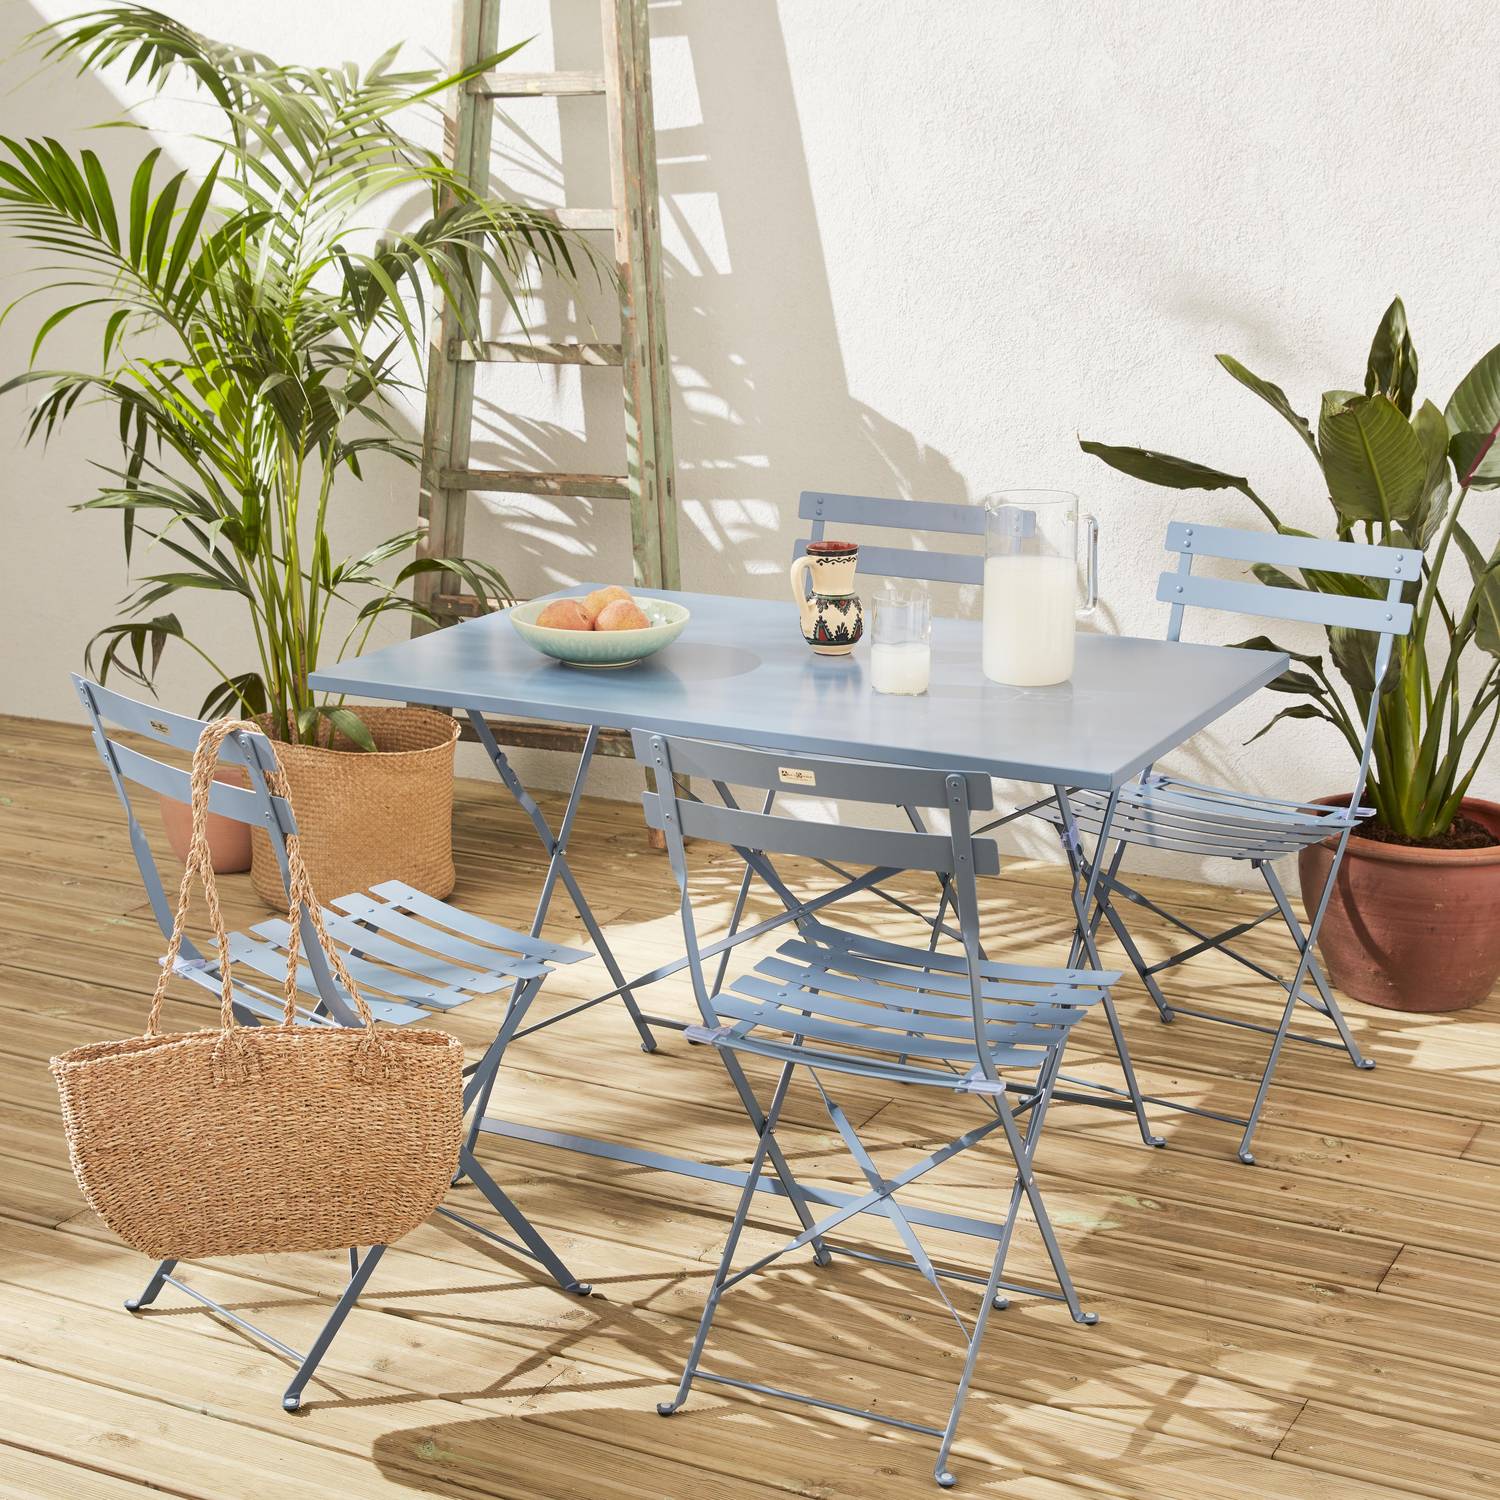 Salotto da giardino, bistrot, pieghevole - modello: Emilia, rettangolare, colore: Blu ombreggiato - Tavolo, dimensioni: 110x70cm, con quattro sedie pieghevoli, acciaio termolaccato Photo6